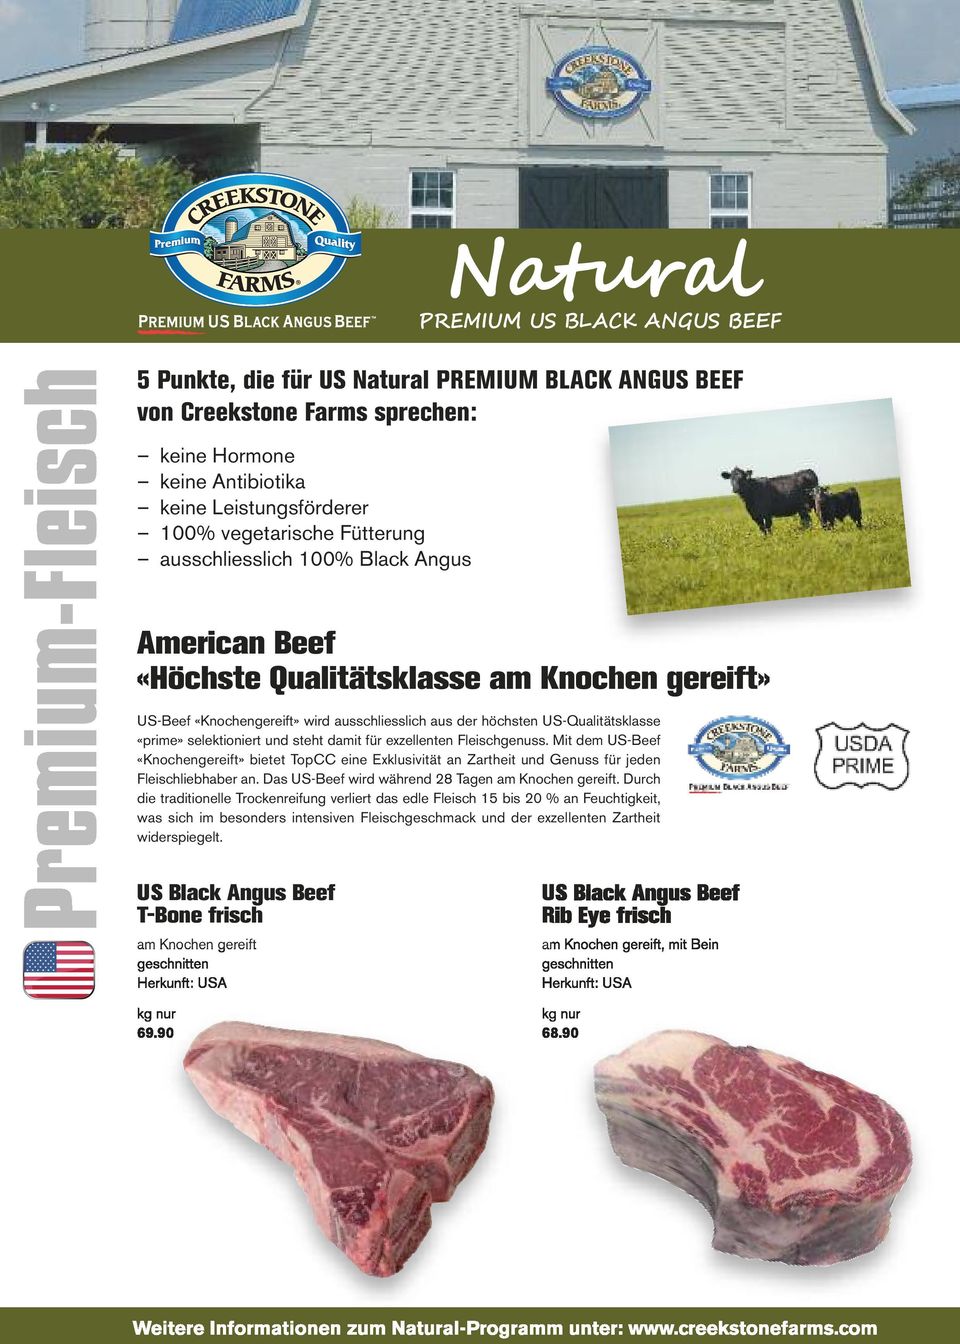 exzellenten Fleischgenuss. Mit dem US-Beef «Knochengereift» bietet TopCC eine Exklusivität an Zartheit und Genuss für jeden Fleischliebhaber an. Das US-Beef wird während 28 Tagen am Knochen gereift.